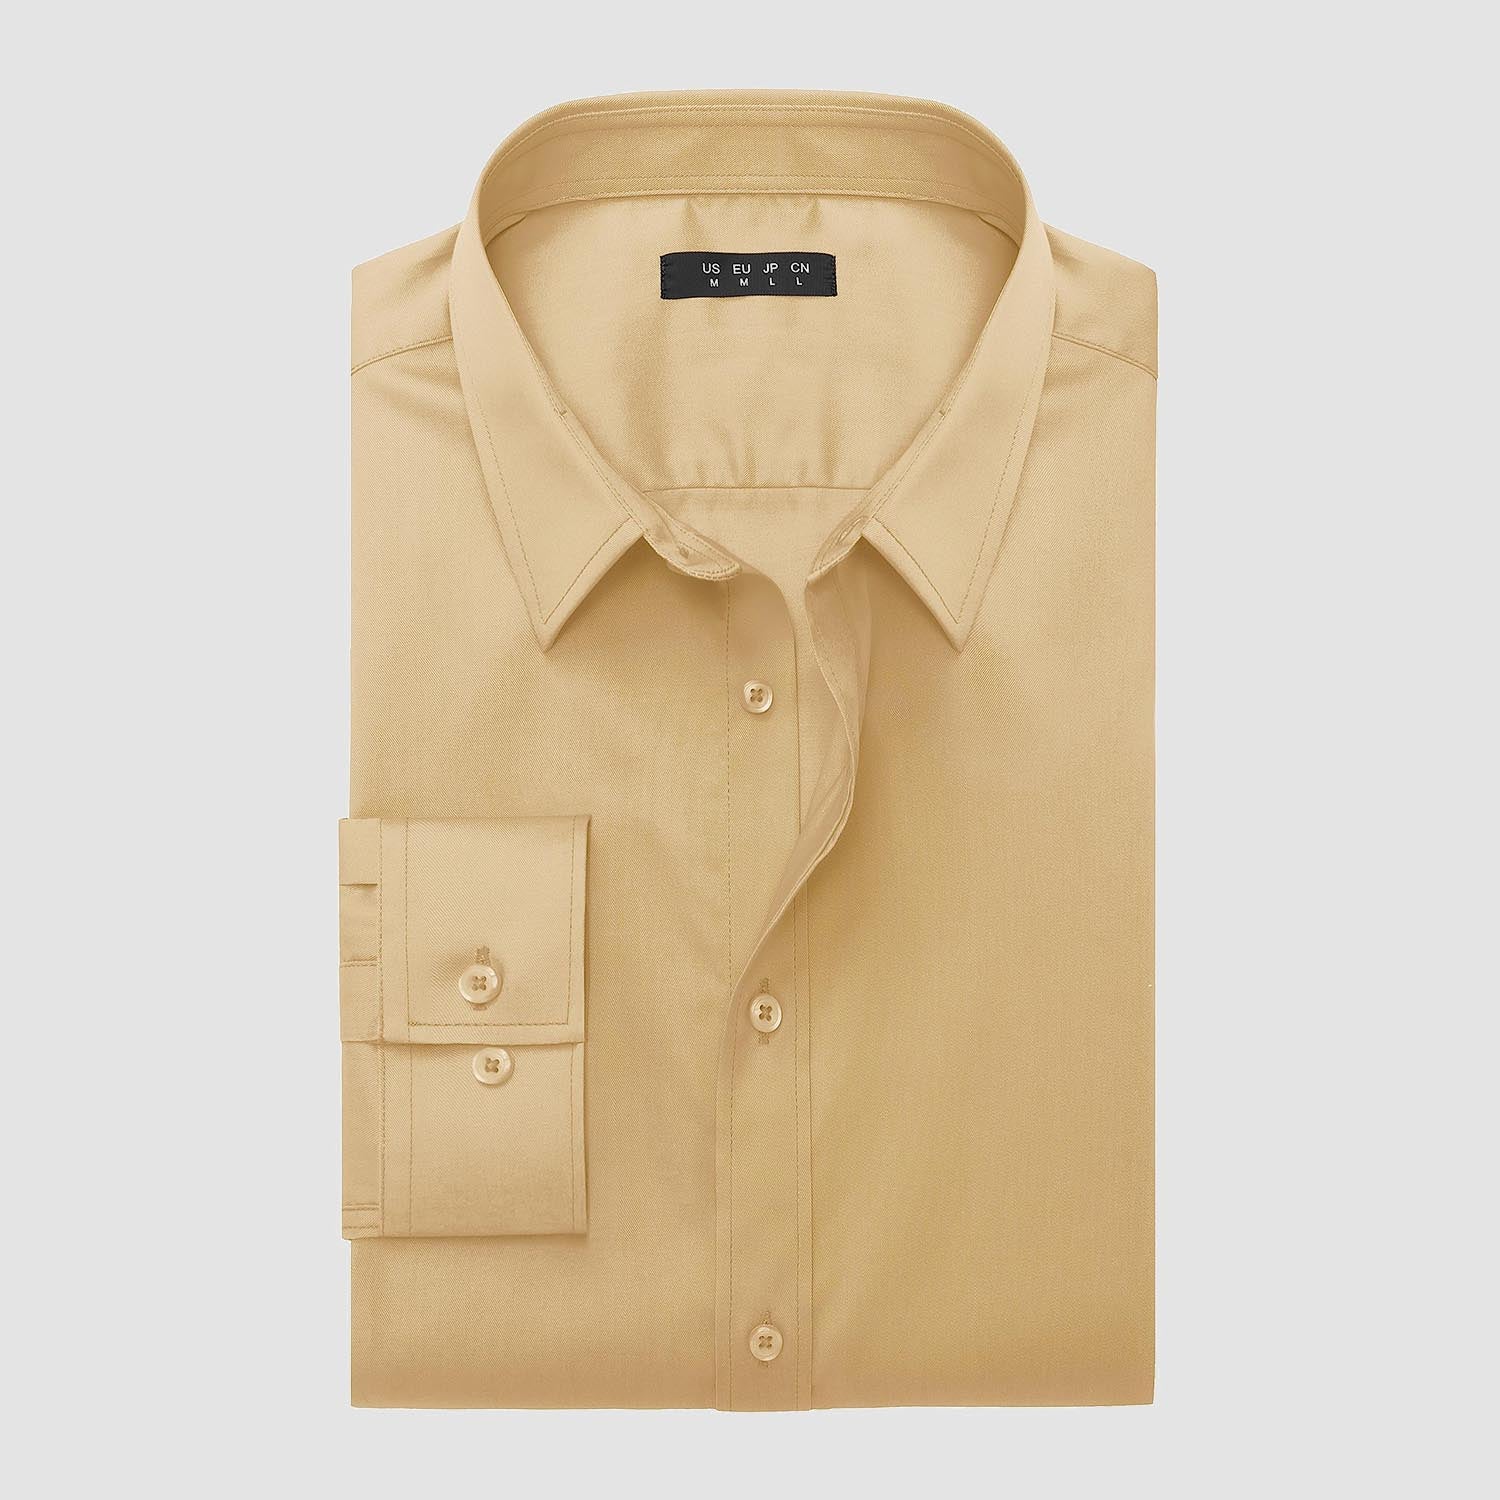 Men's Dress Shirt Long Sleeve Button Down Shirts Wrinkle-Free Lightweight Collared Shirt Regular Fit